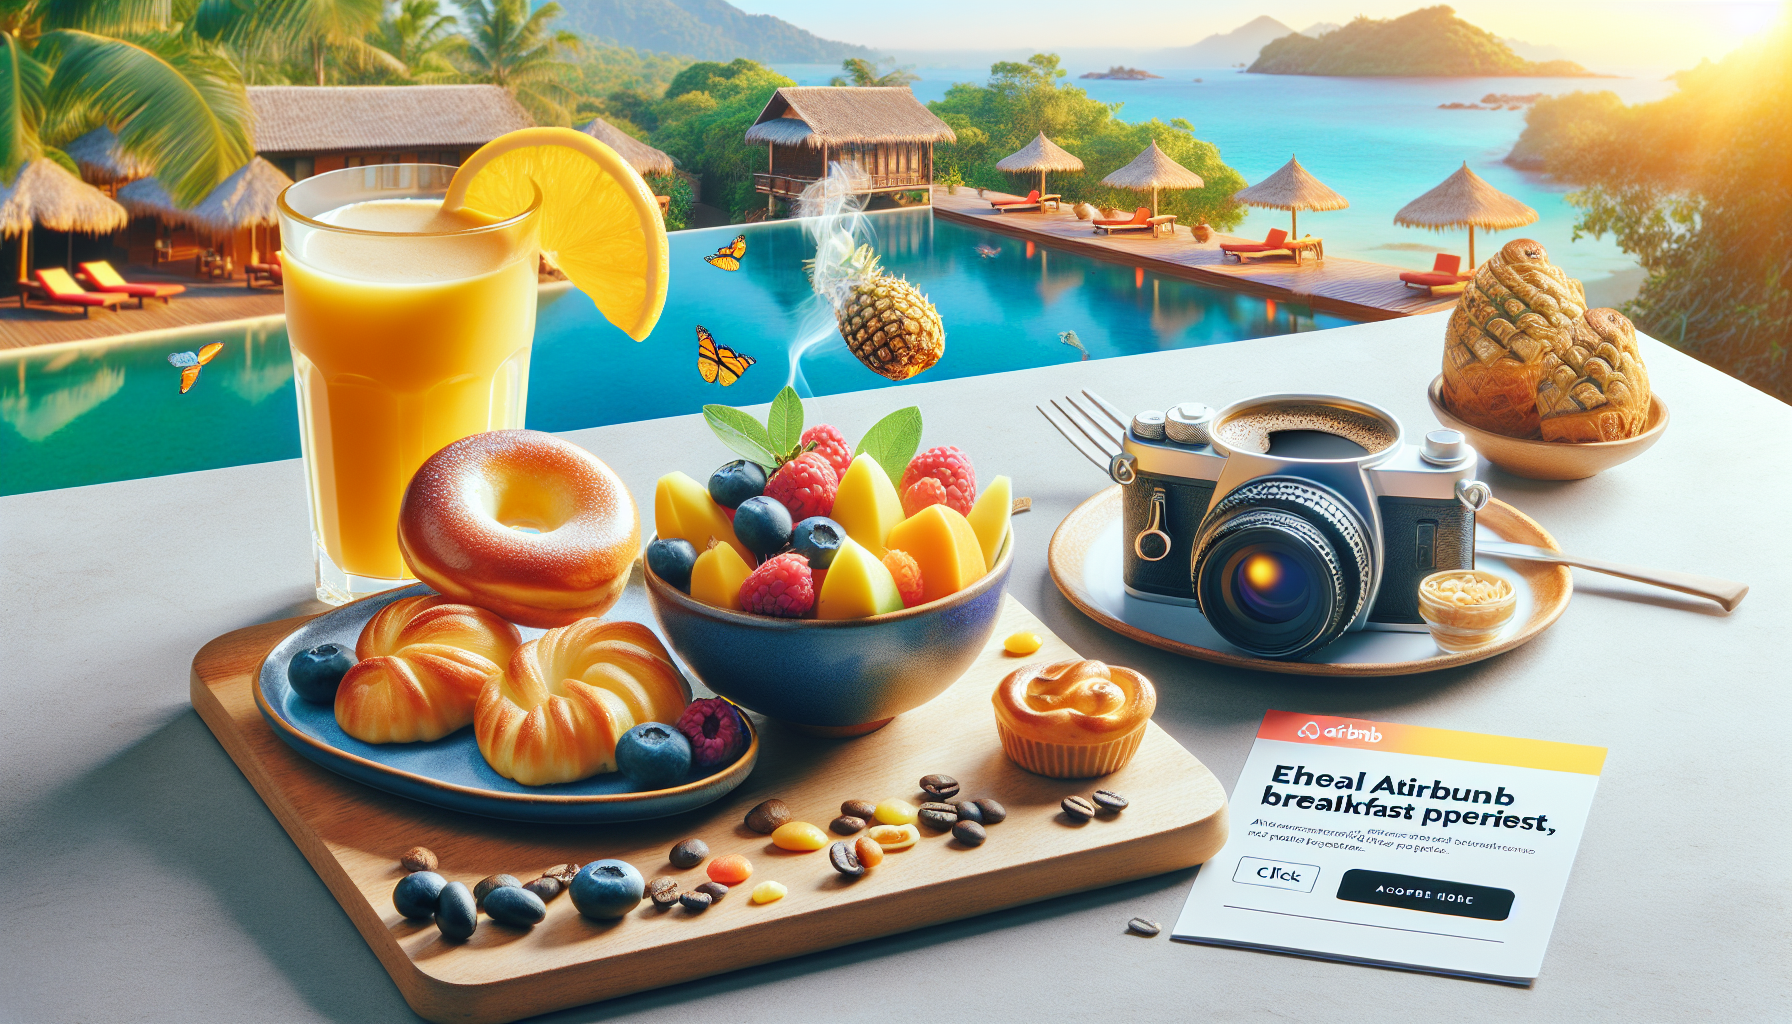 découvrez le petit-déjeuner parfait pour les voyageurs airbnb : délicieuse sélection de produits locaux, variété de saveurs et ambiance chaleureuse pour bien commencer la journée.